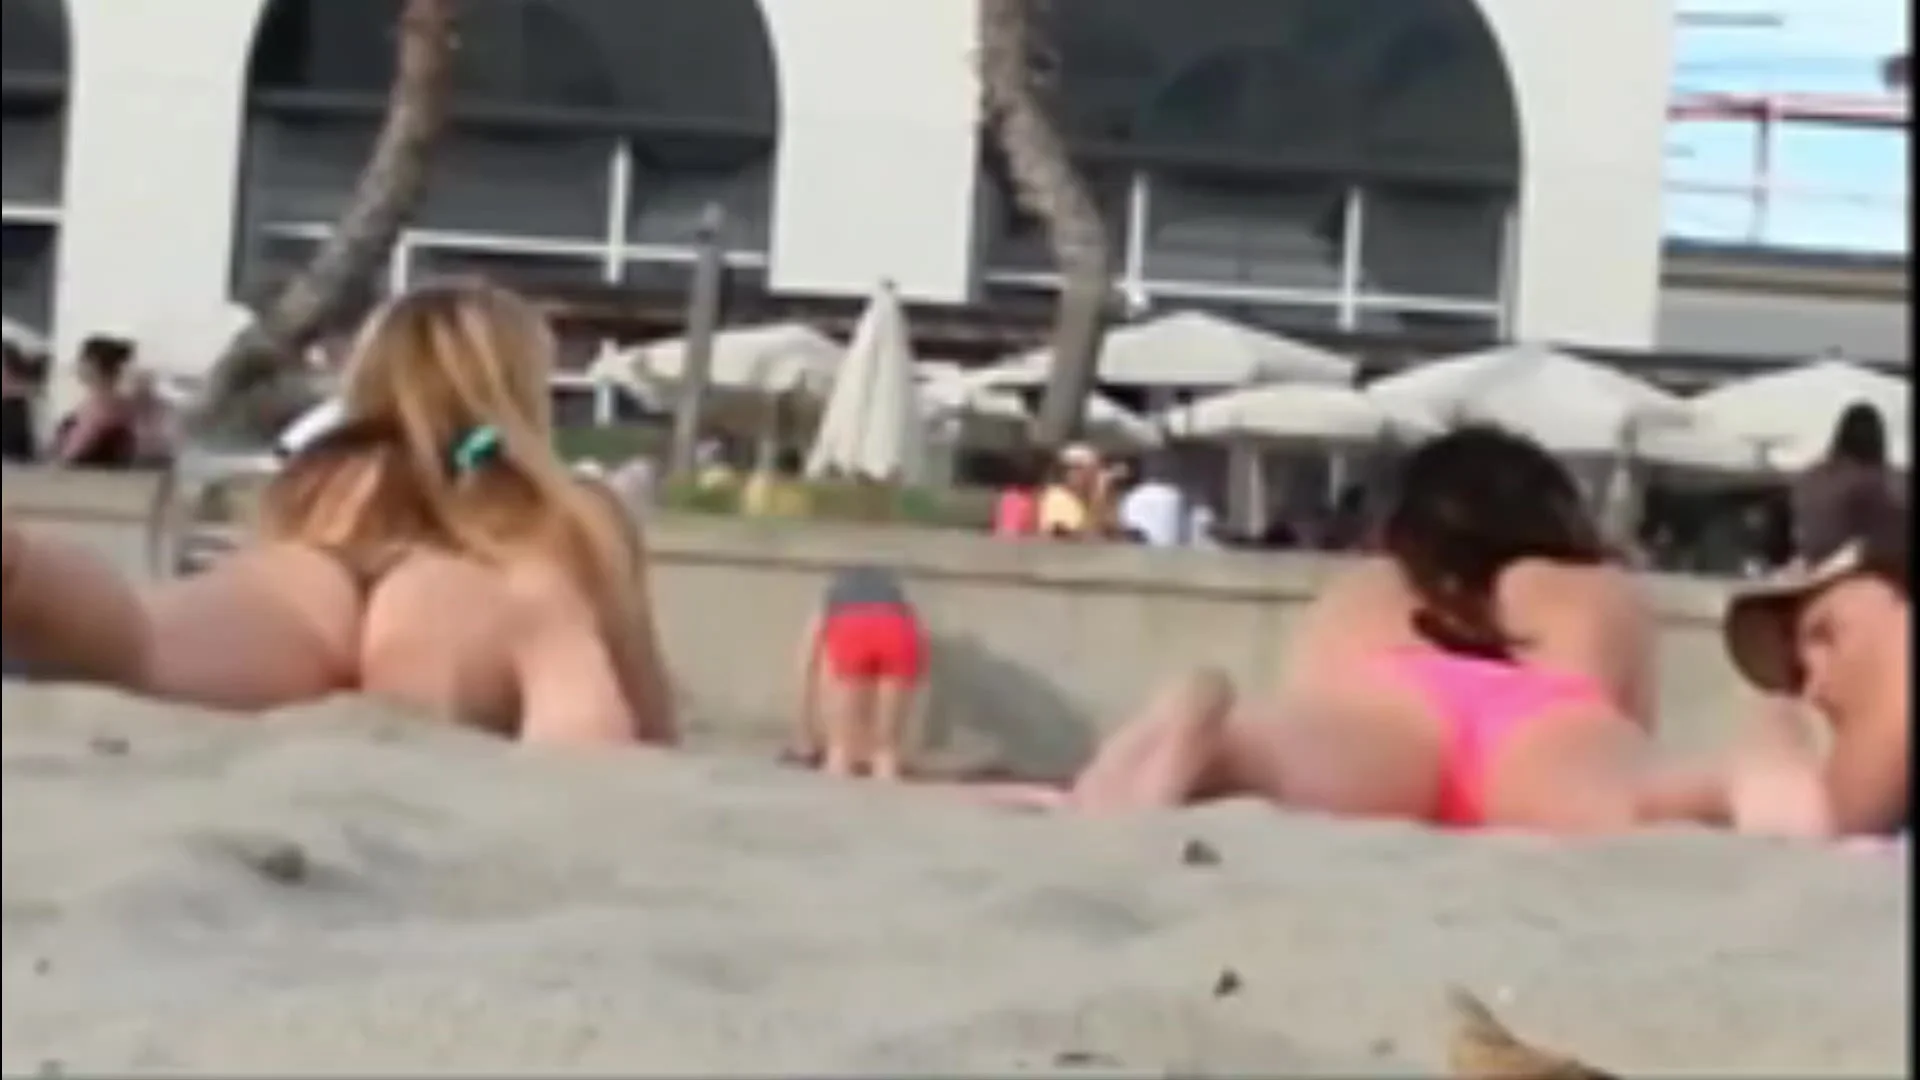 Girl Masturbates next to her Friend in Public